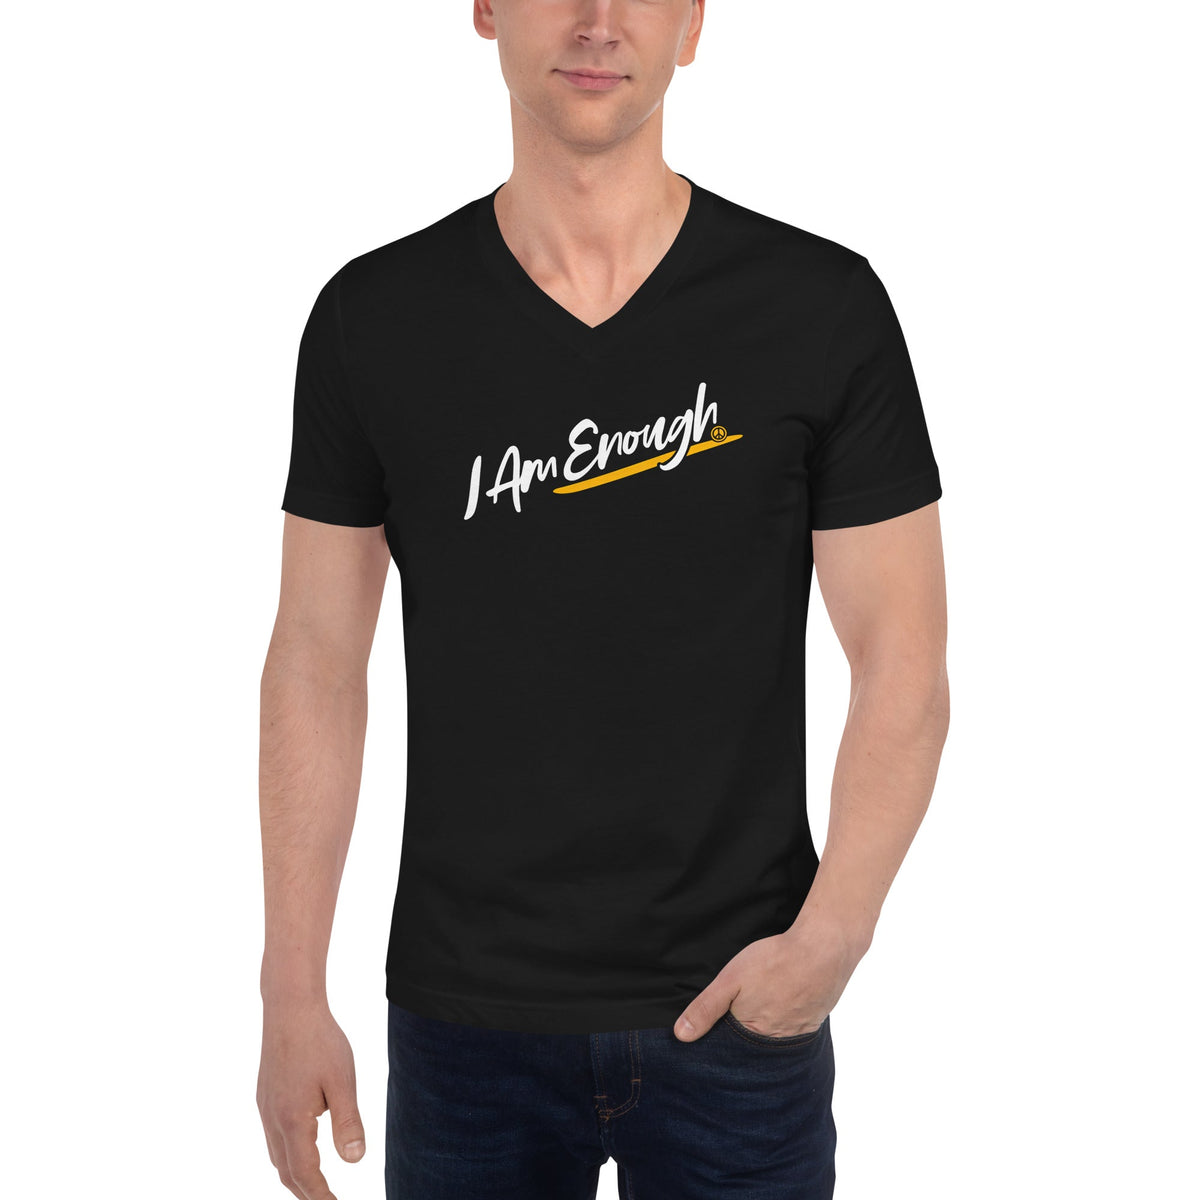 I AM ENOUGH - Inspirational Script V-Neck T-Shirt for Men | I Am Enough Collection